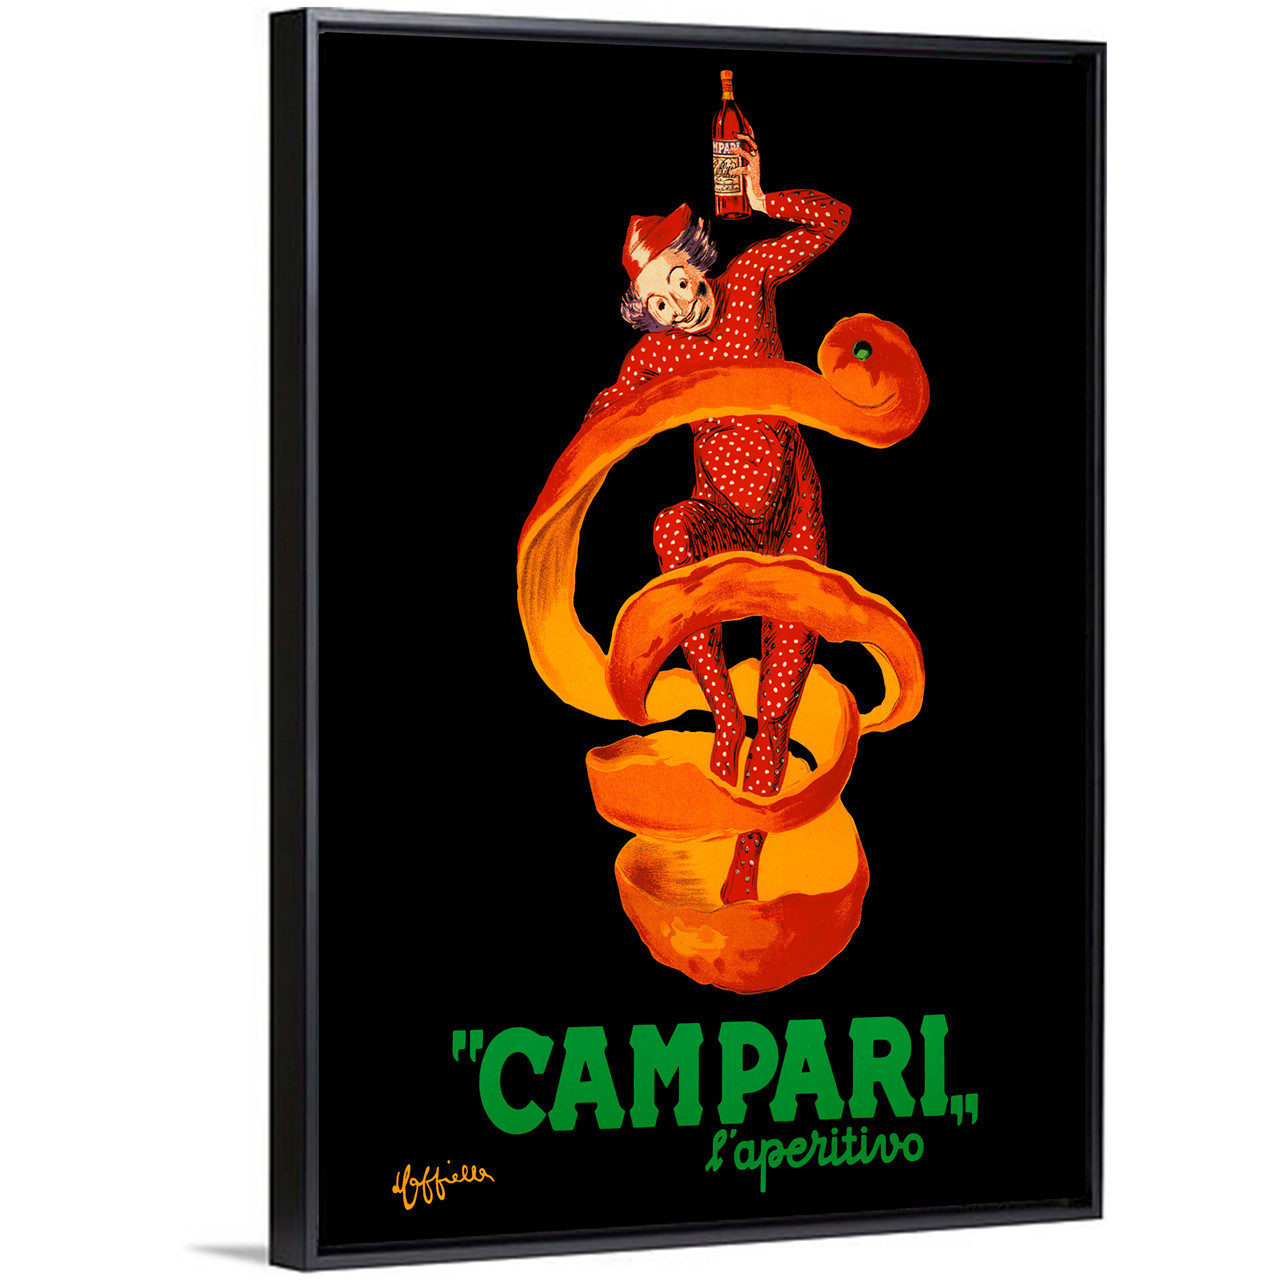 Campari by Cappiello